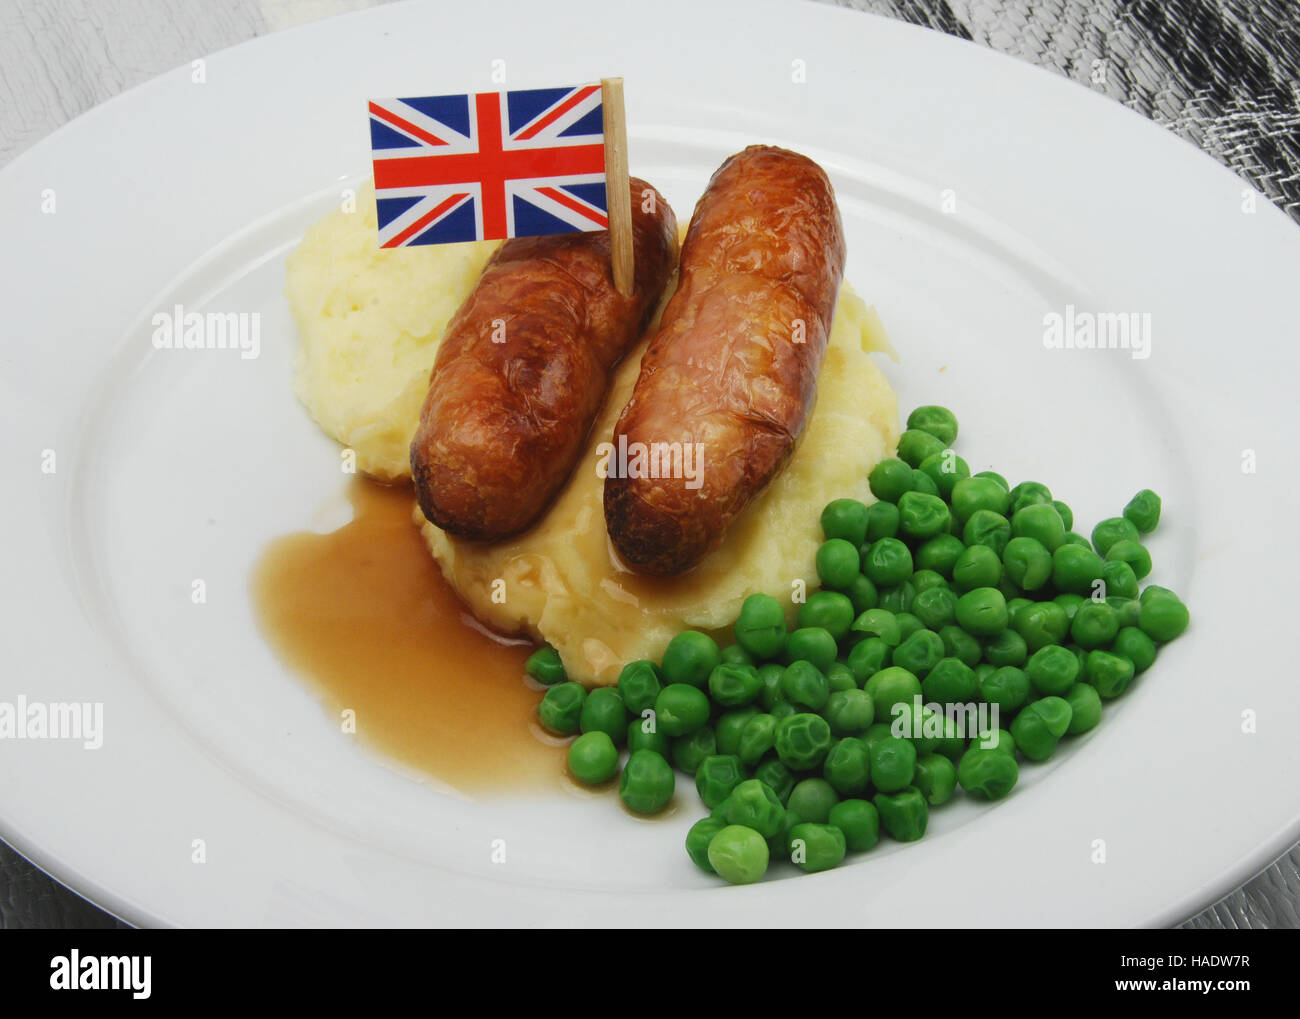 British salsiccia e mash con piselli e sugo di carne che mostra la bandiera europea Foto Stock